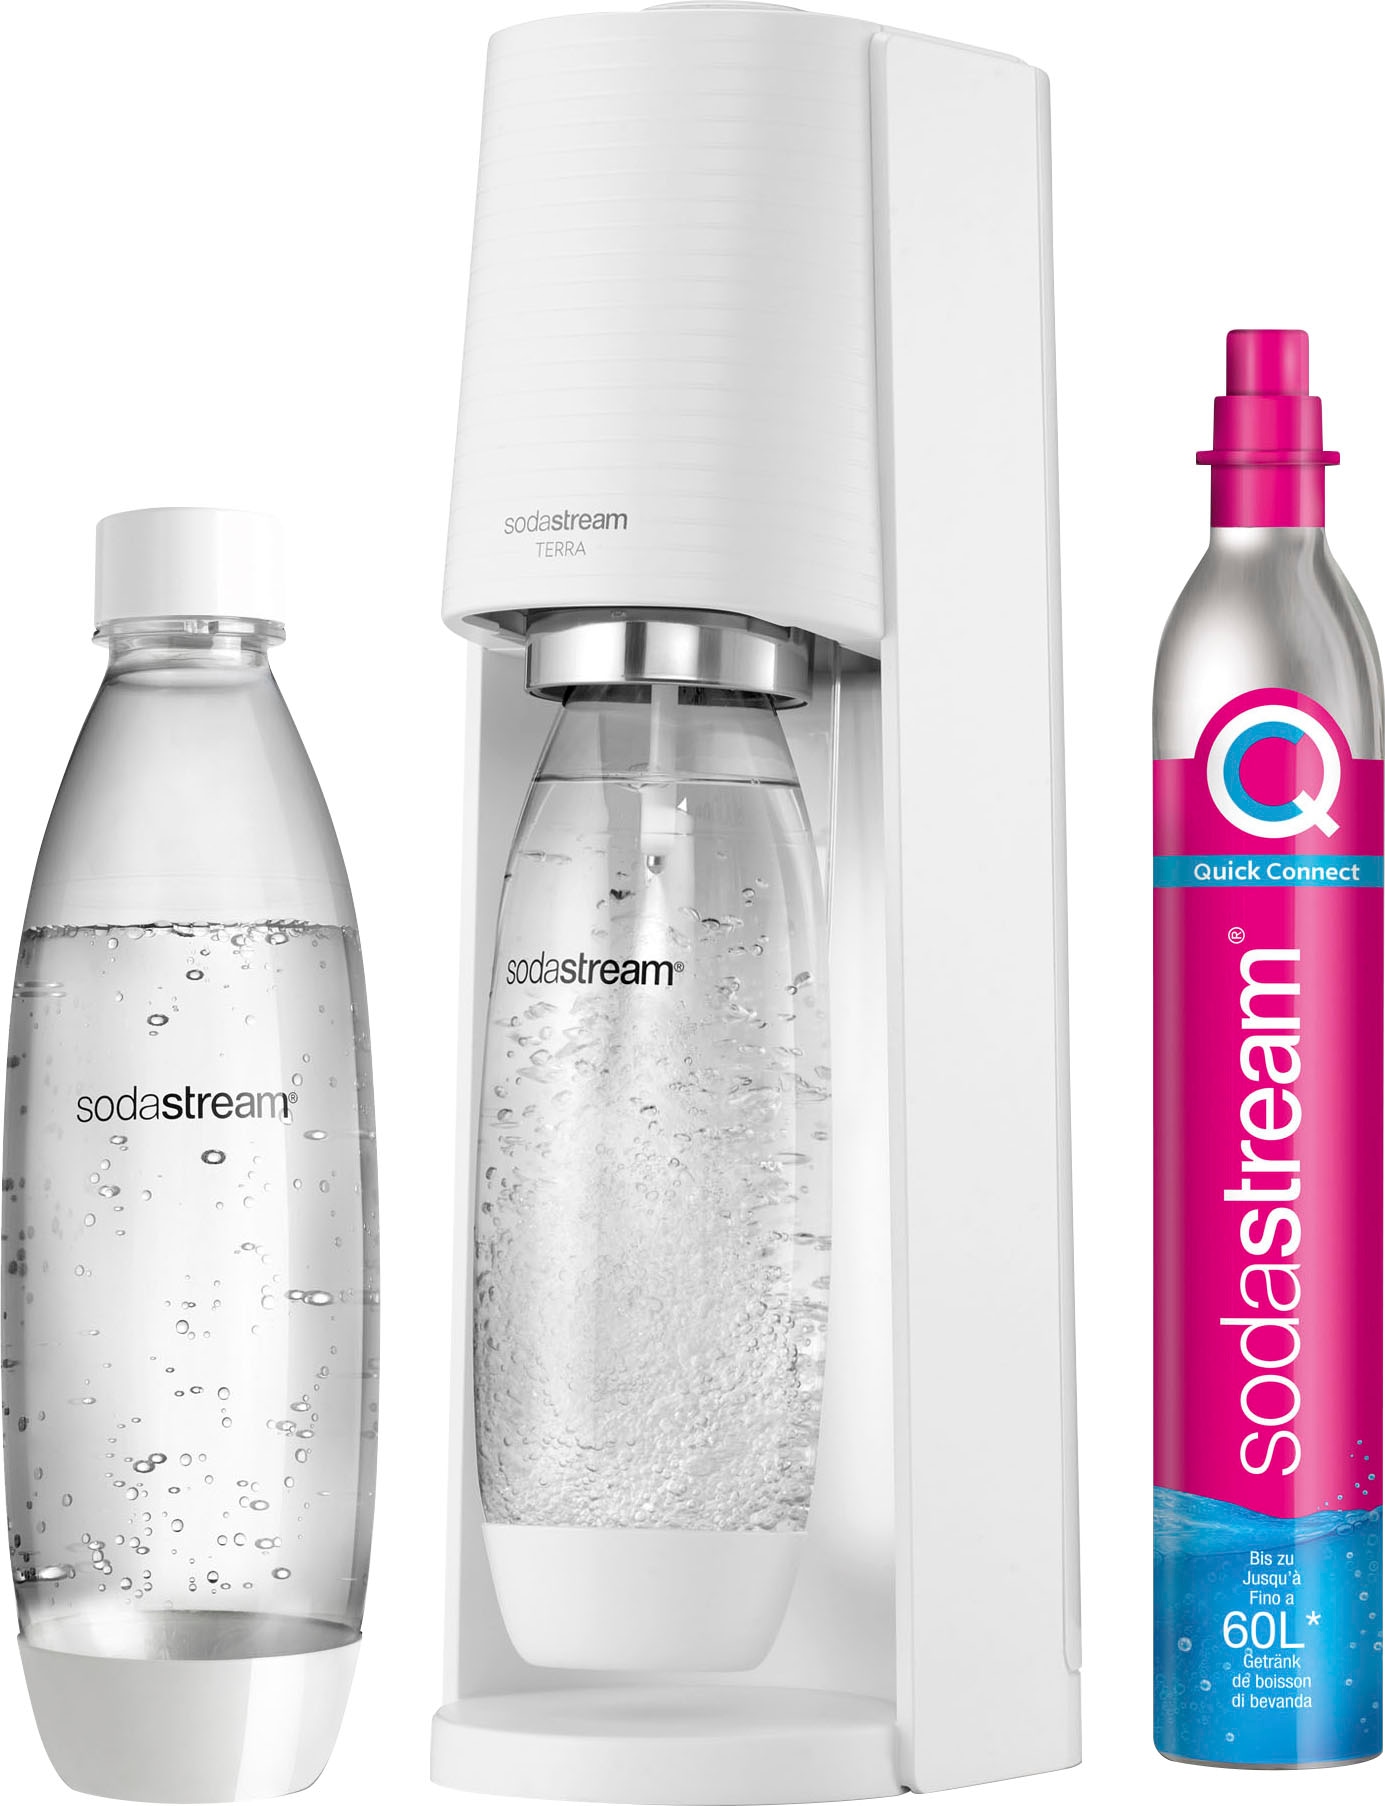 SodaStream Wassersprudler »TERRA«, inkl. 1x CO2-Zylinder CQC, 1x 1L  spülmaschinenfeste Kunststoff-Flasche per Rechnung | BAUR